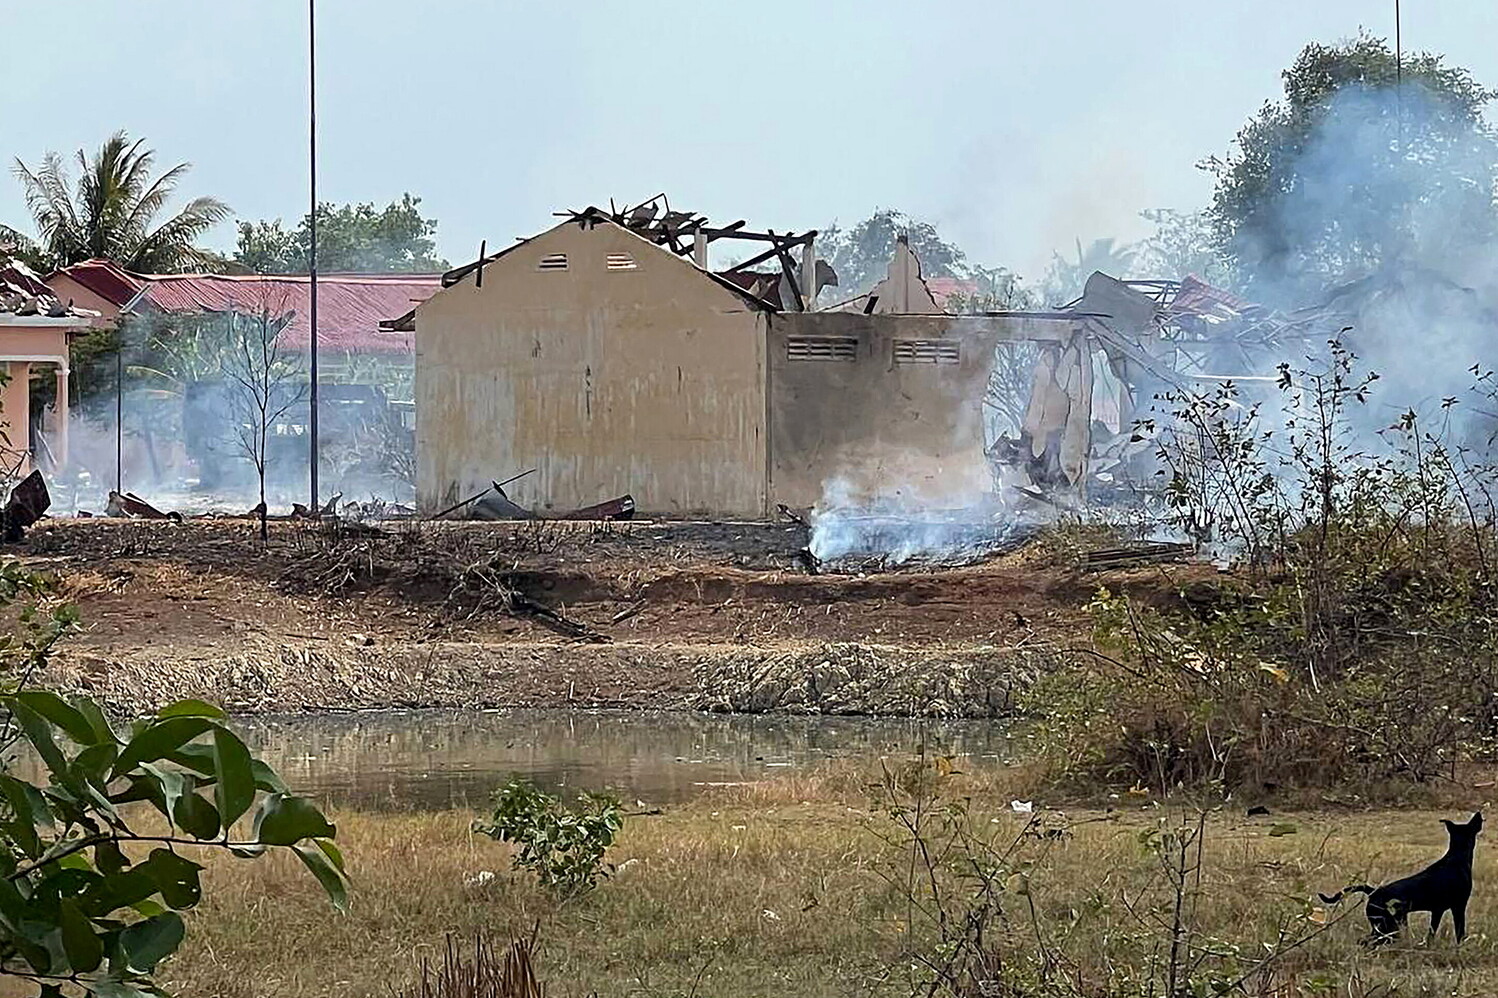 cambogia, esplode un deposito munizioni: morti almeno 20 soldati